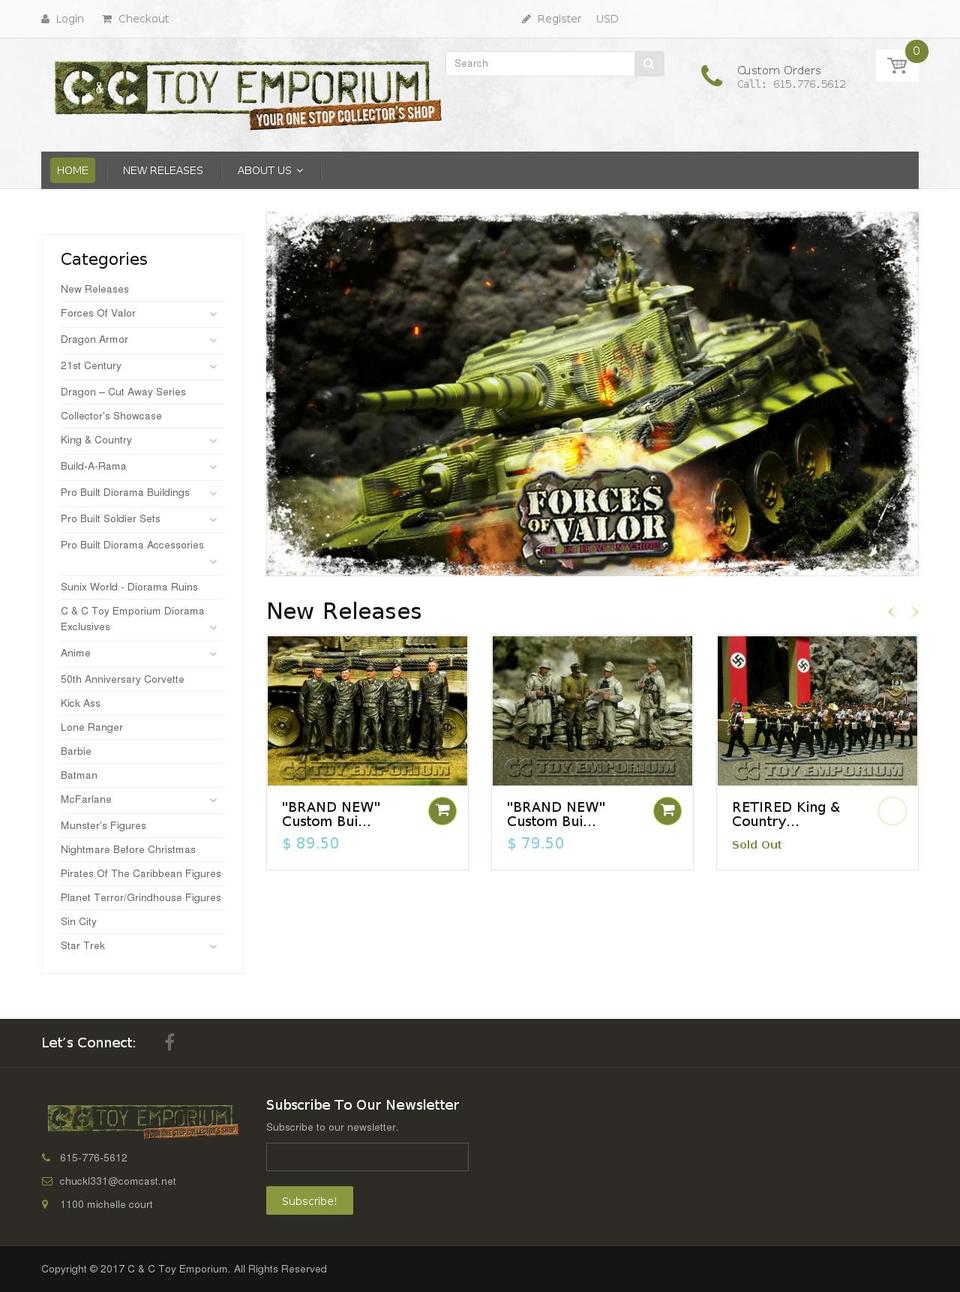 candctoyemporium.com shopify website screenshot